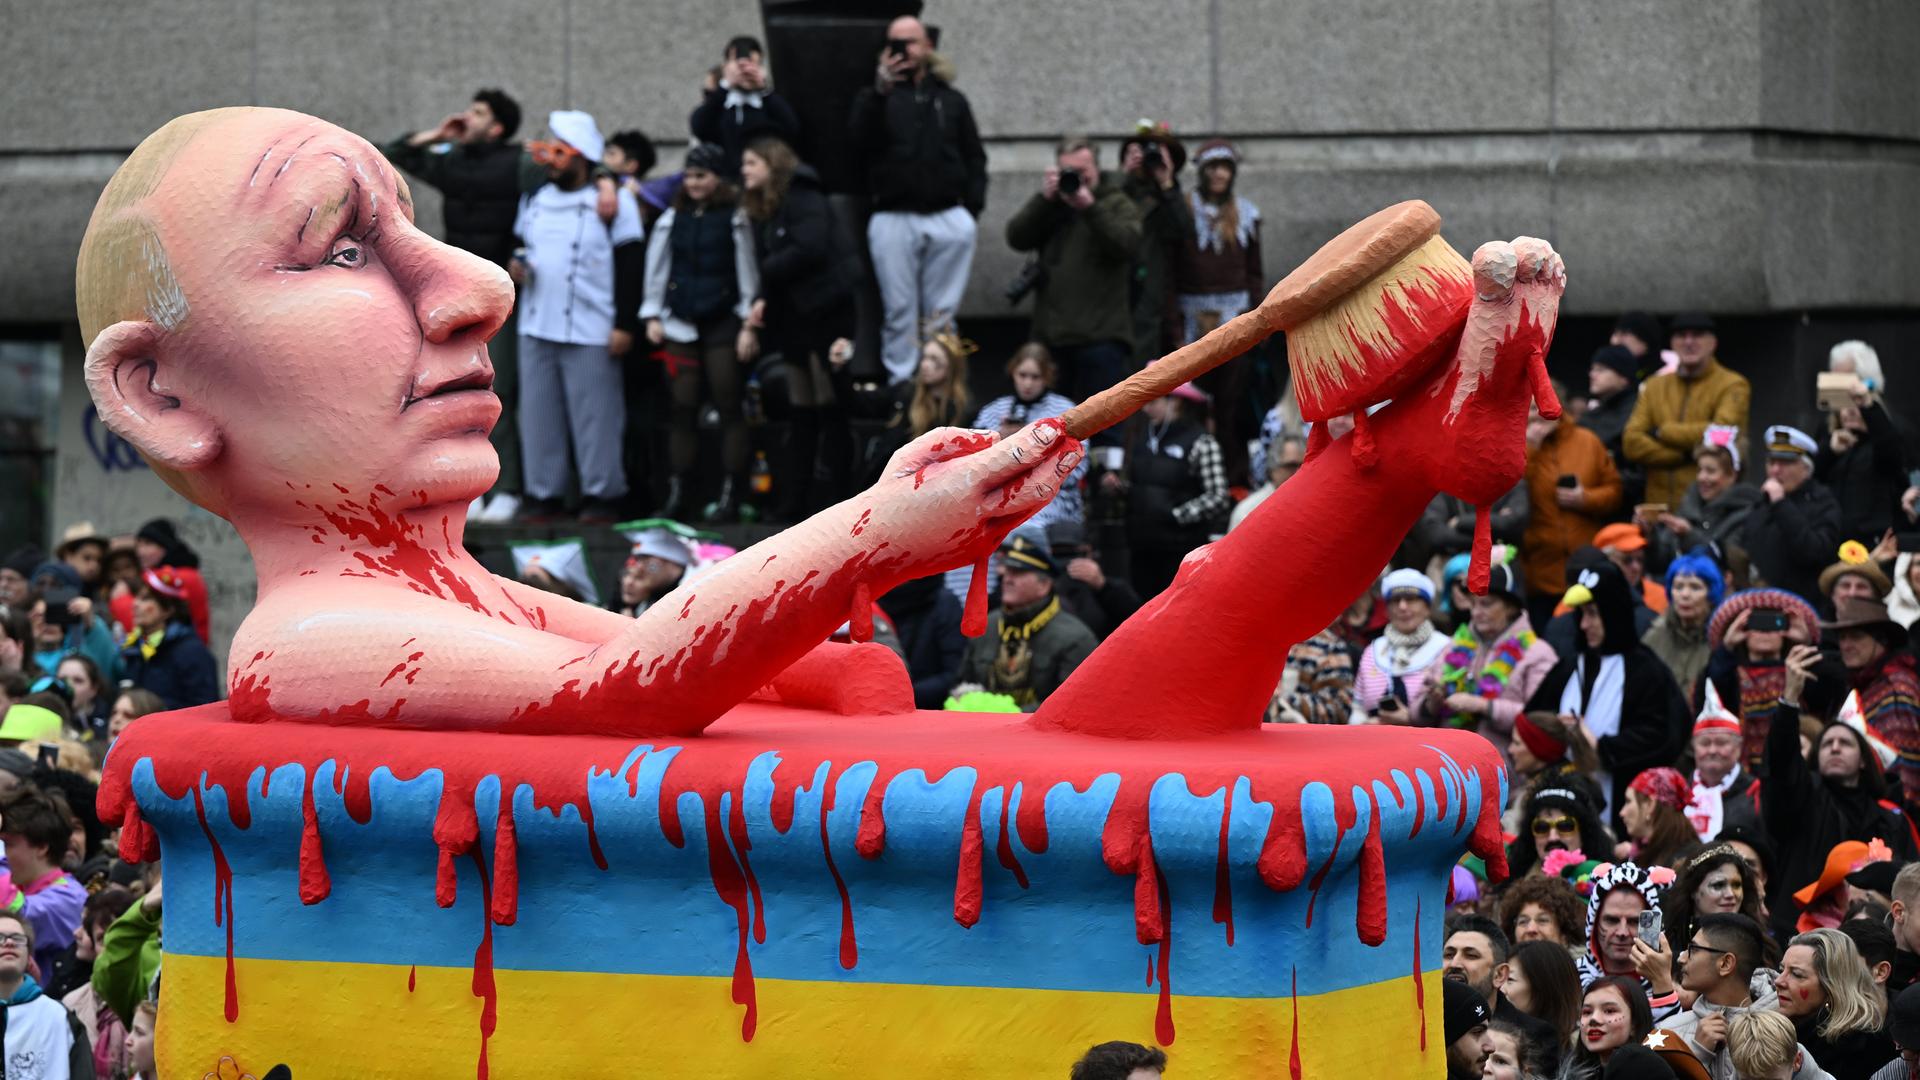 Ein Motto-Wagen zeigt den russischen Präsidenten Putin. Er liegt in einer Bade-Wanne in den ukrainischen National-Farben. Die Wanne ist voll Blut.